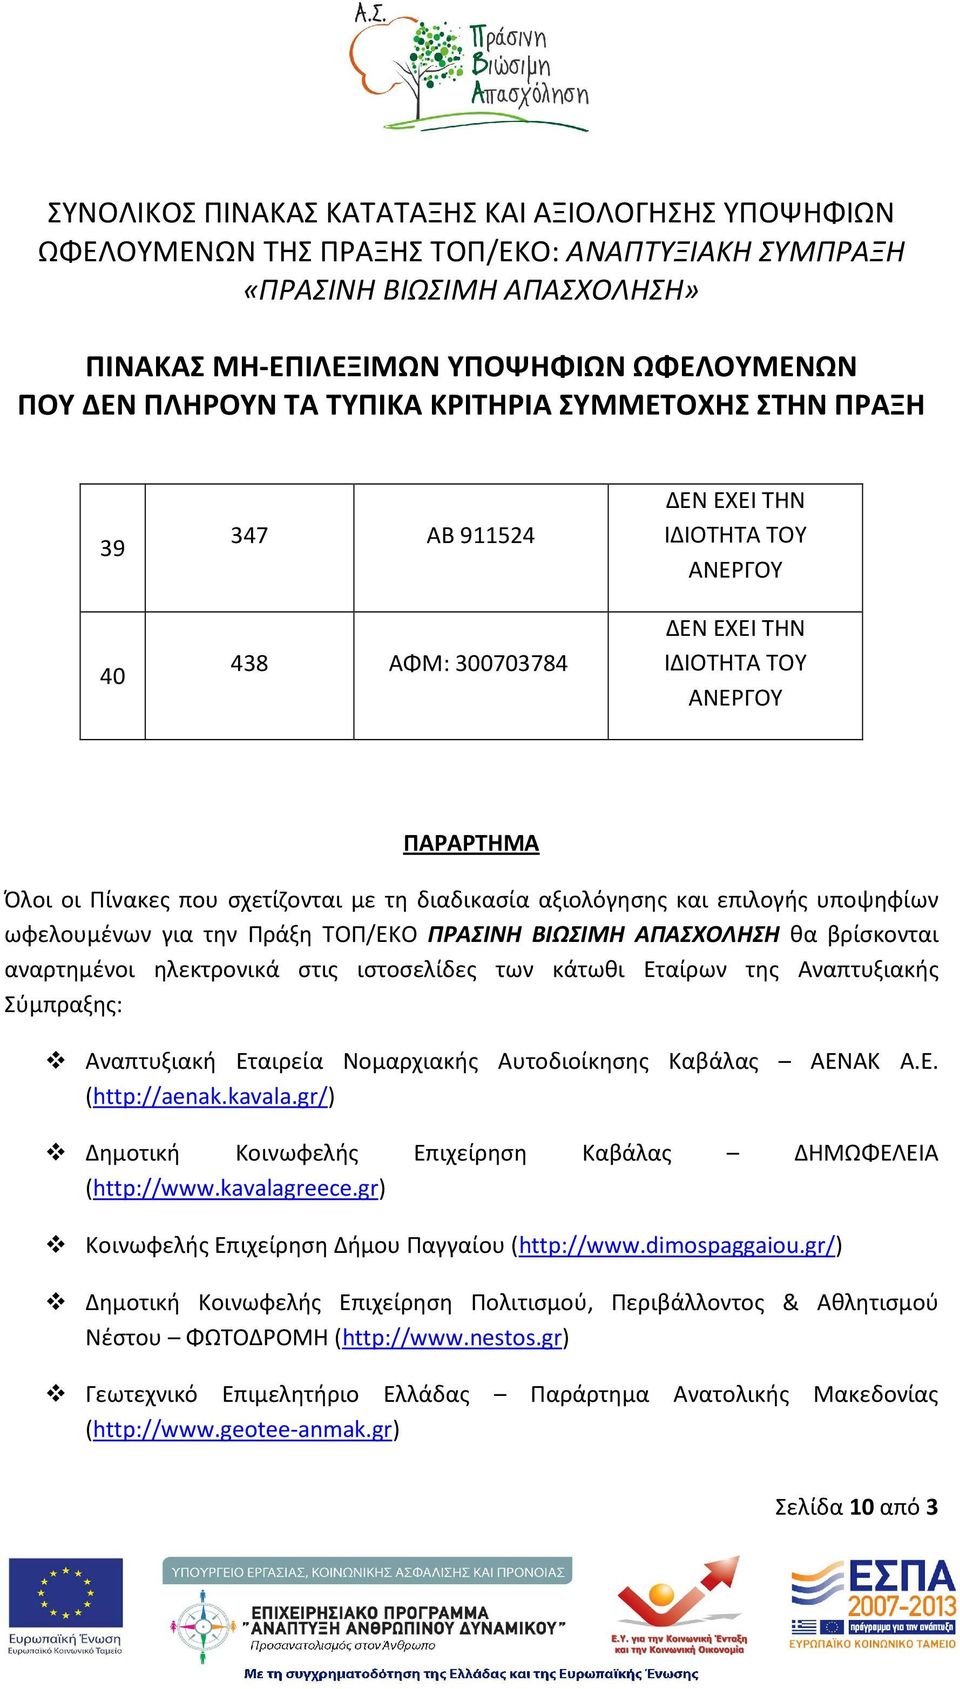 Νομαρχιακής Αυτοδιοίκησης Καβάλας ΑΕΝΑΚ Α.Ε. (http://aenak.kavala.gr/) Δημοτική Κοινωφελής Επιχείρηση Καβάλας ΔΗΜΩΦΕΛΕΙΑ (http://www.kavalagreece.gr) Κοινωφελής Επιχείρηση Δήμου Παγγαίου (http://www.